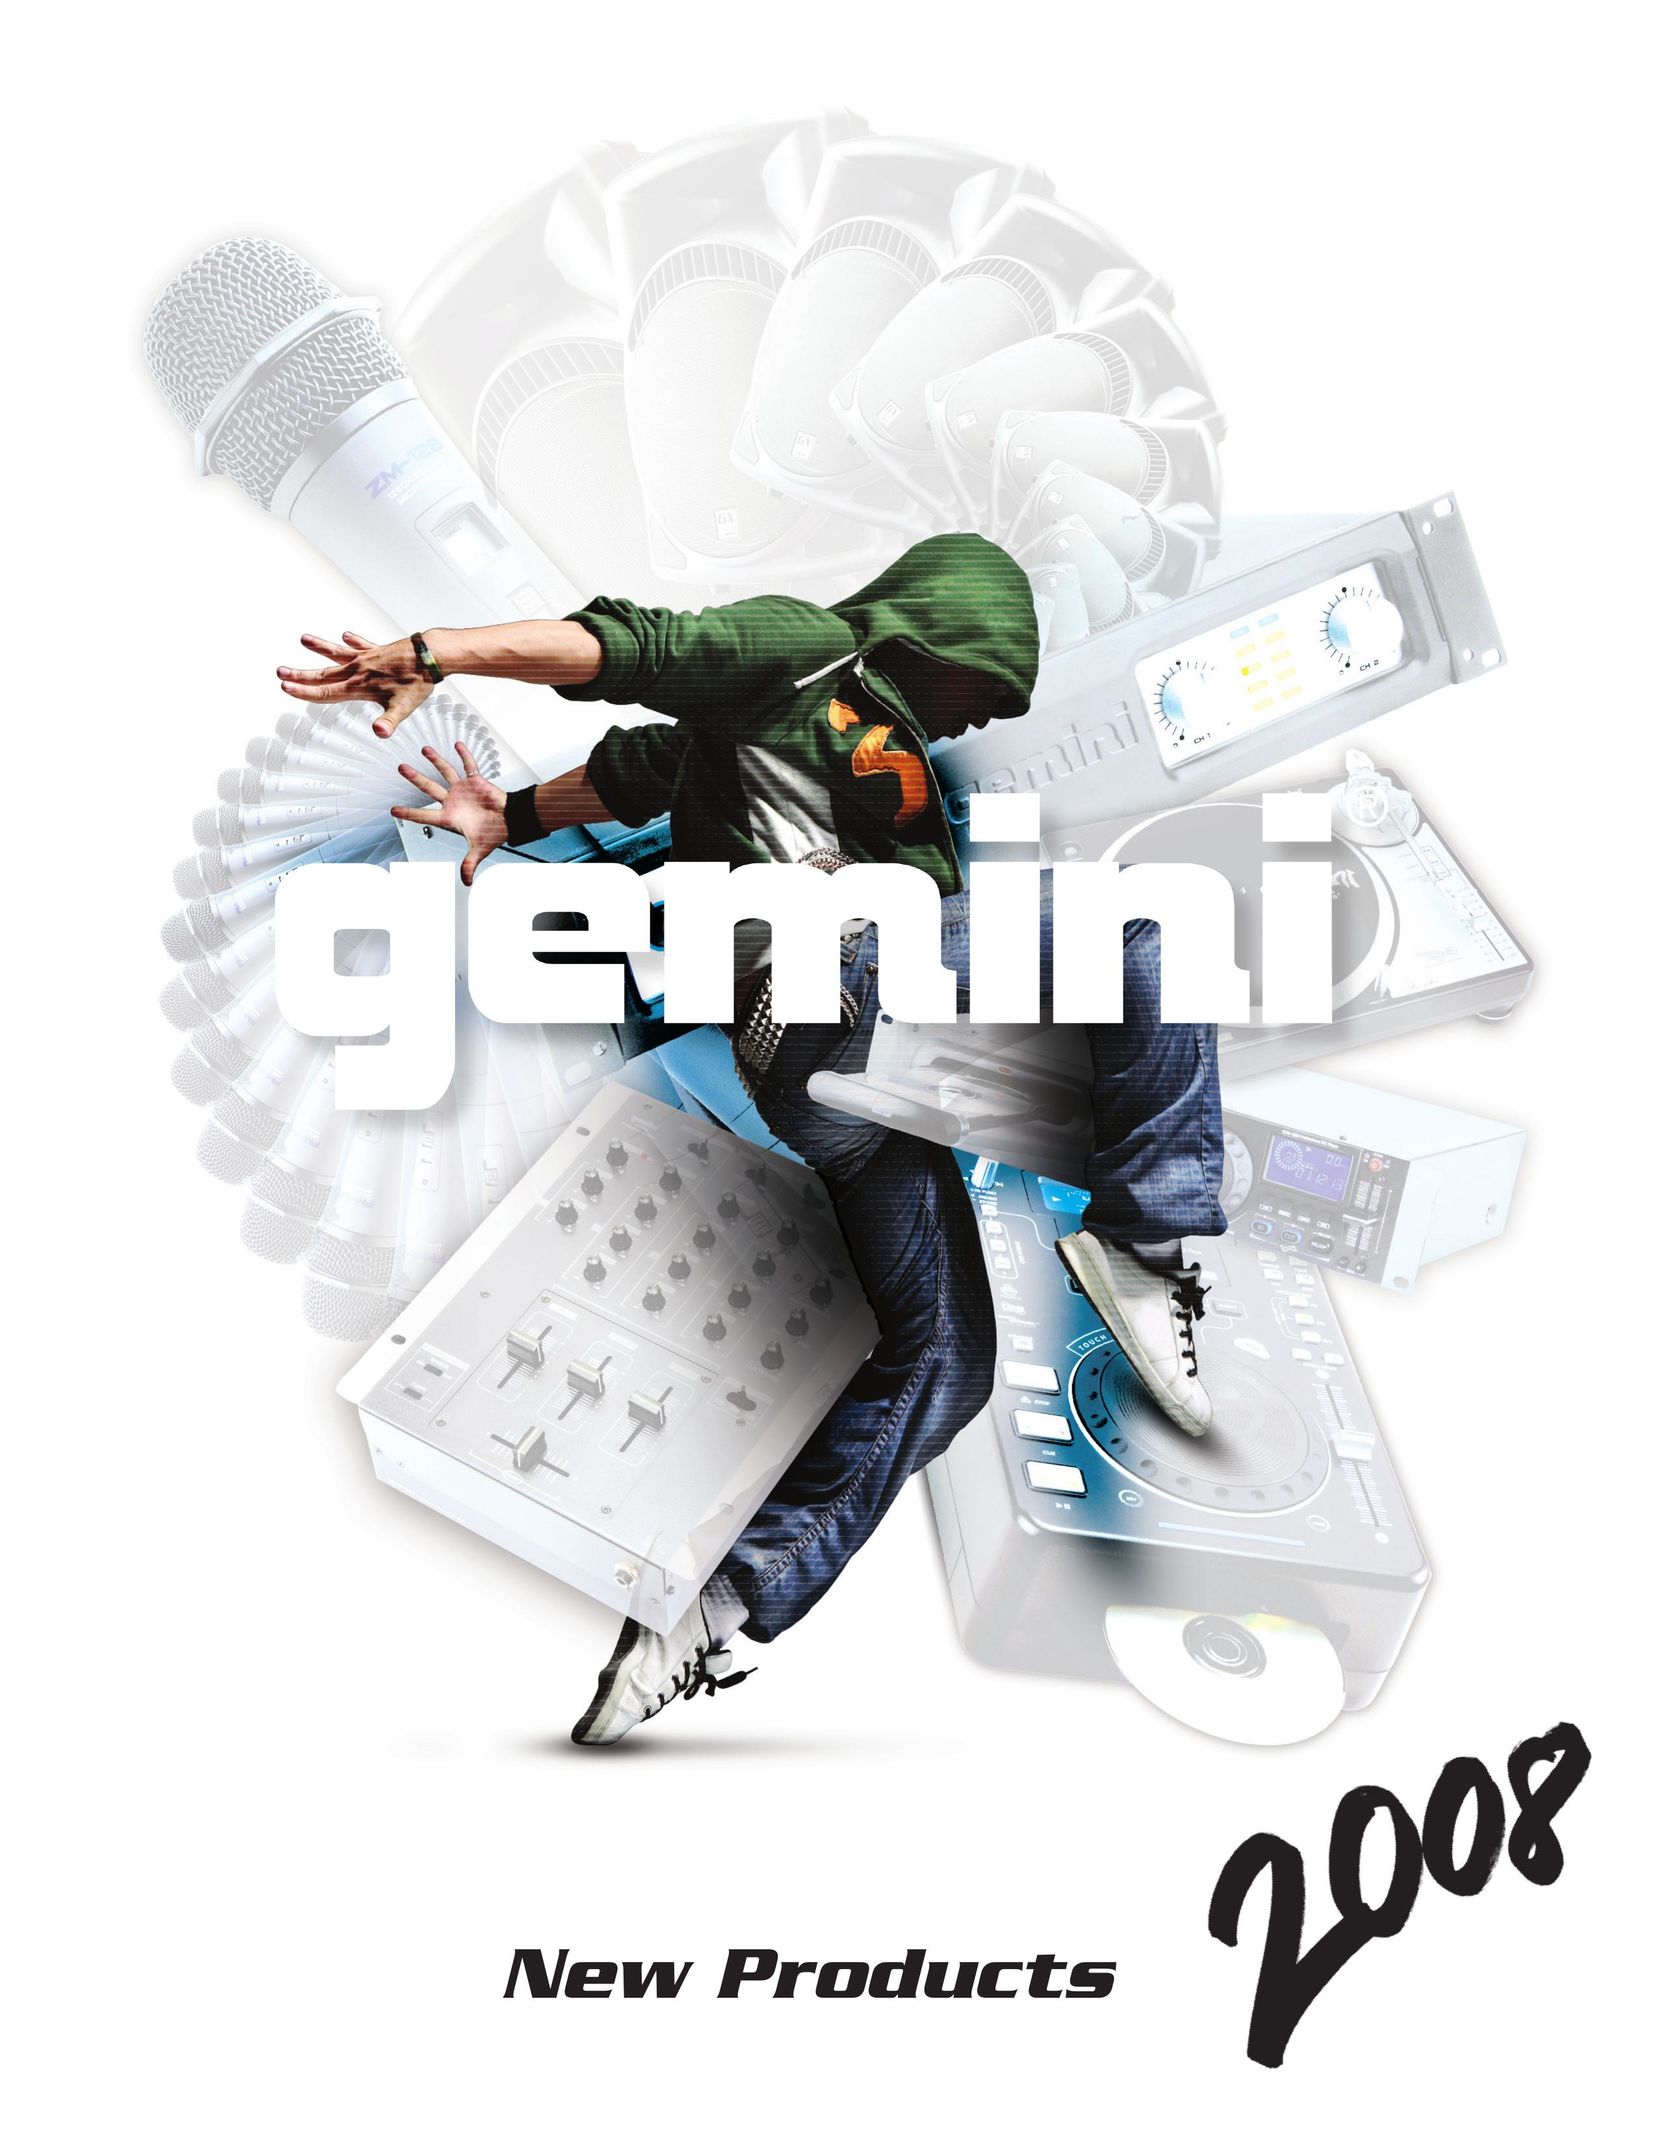 Gemini CDMP-5000 MP3 Player User Manual